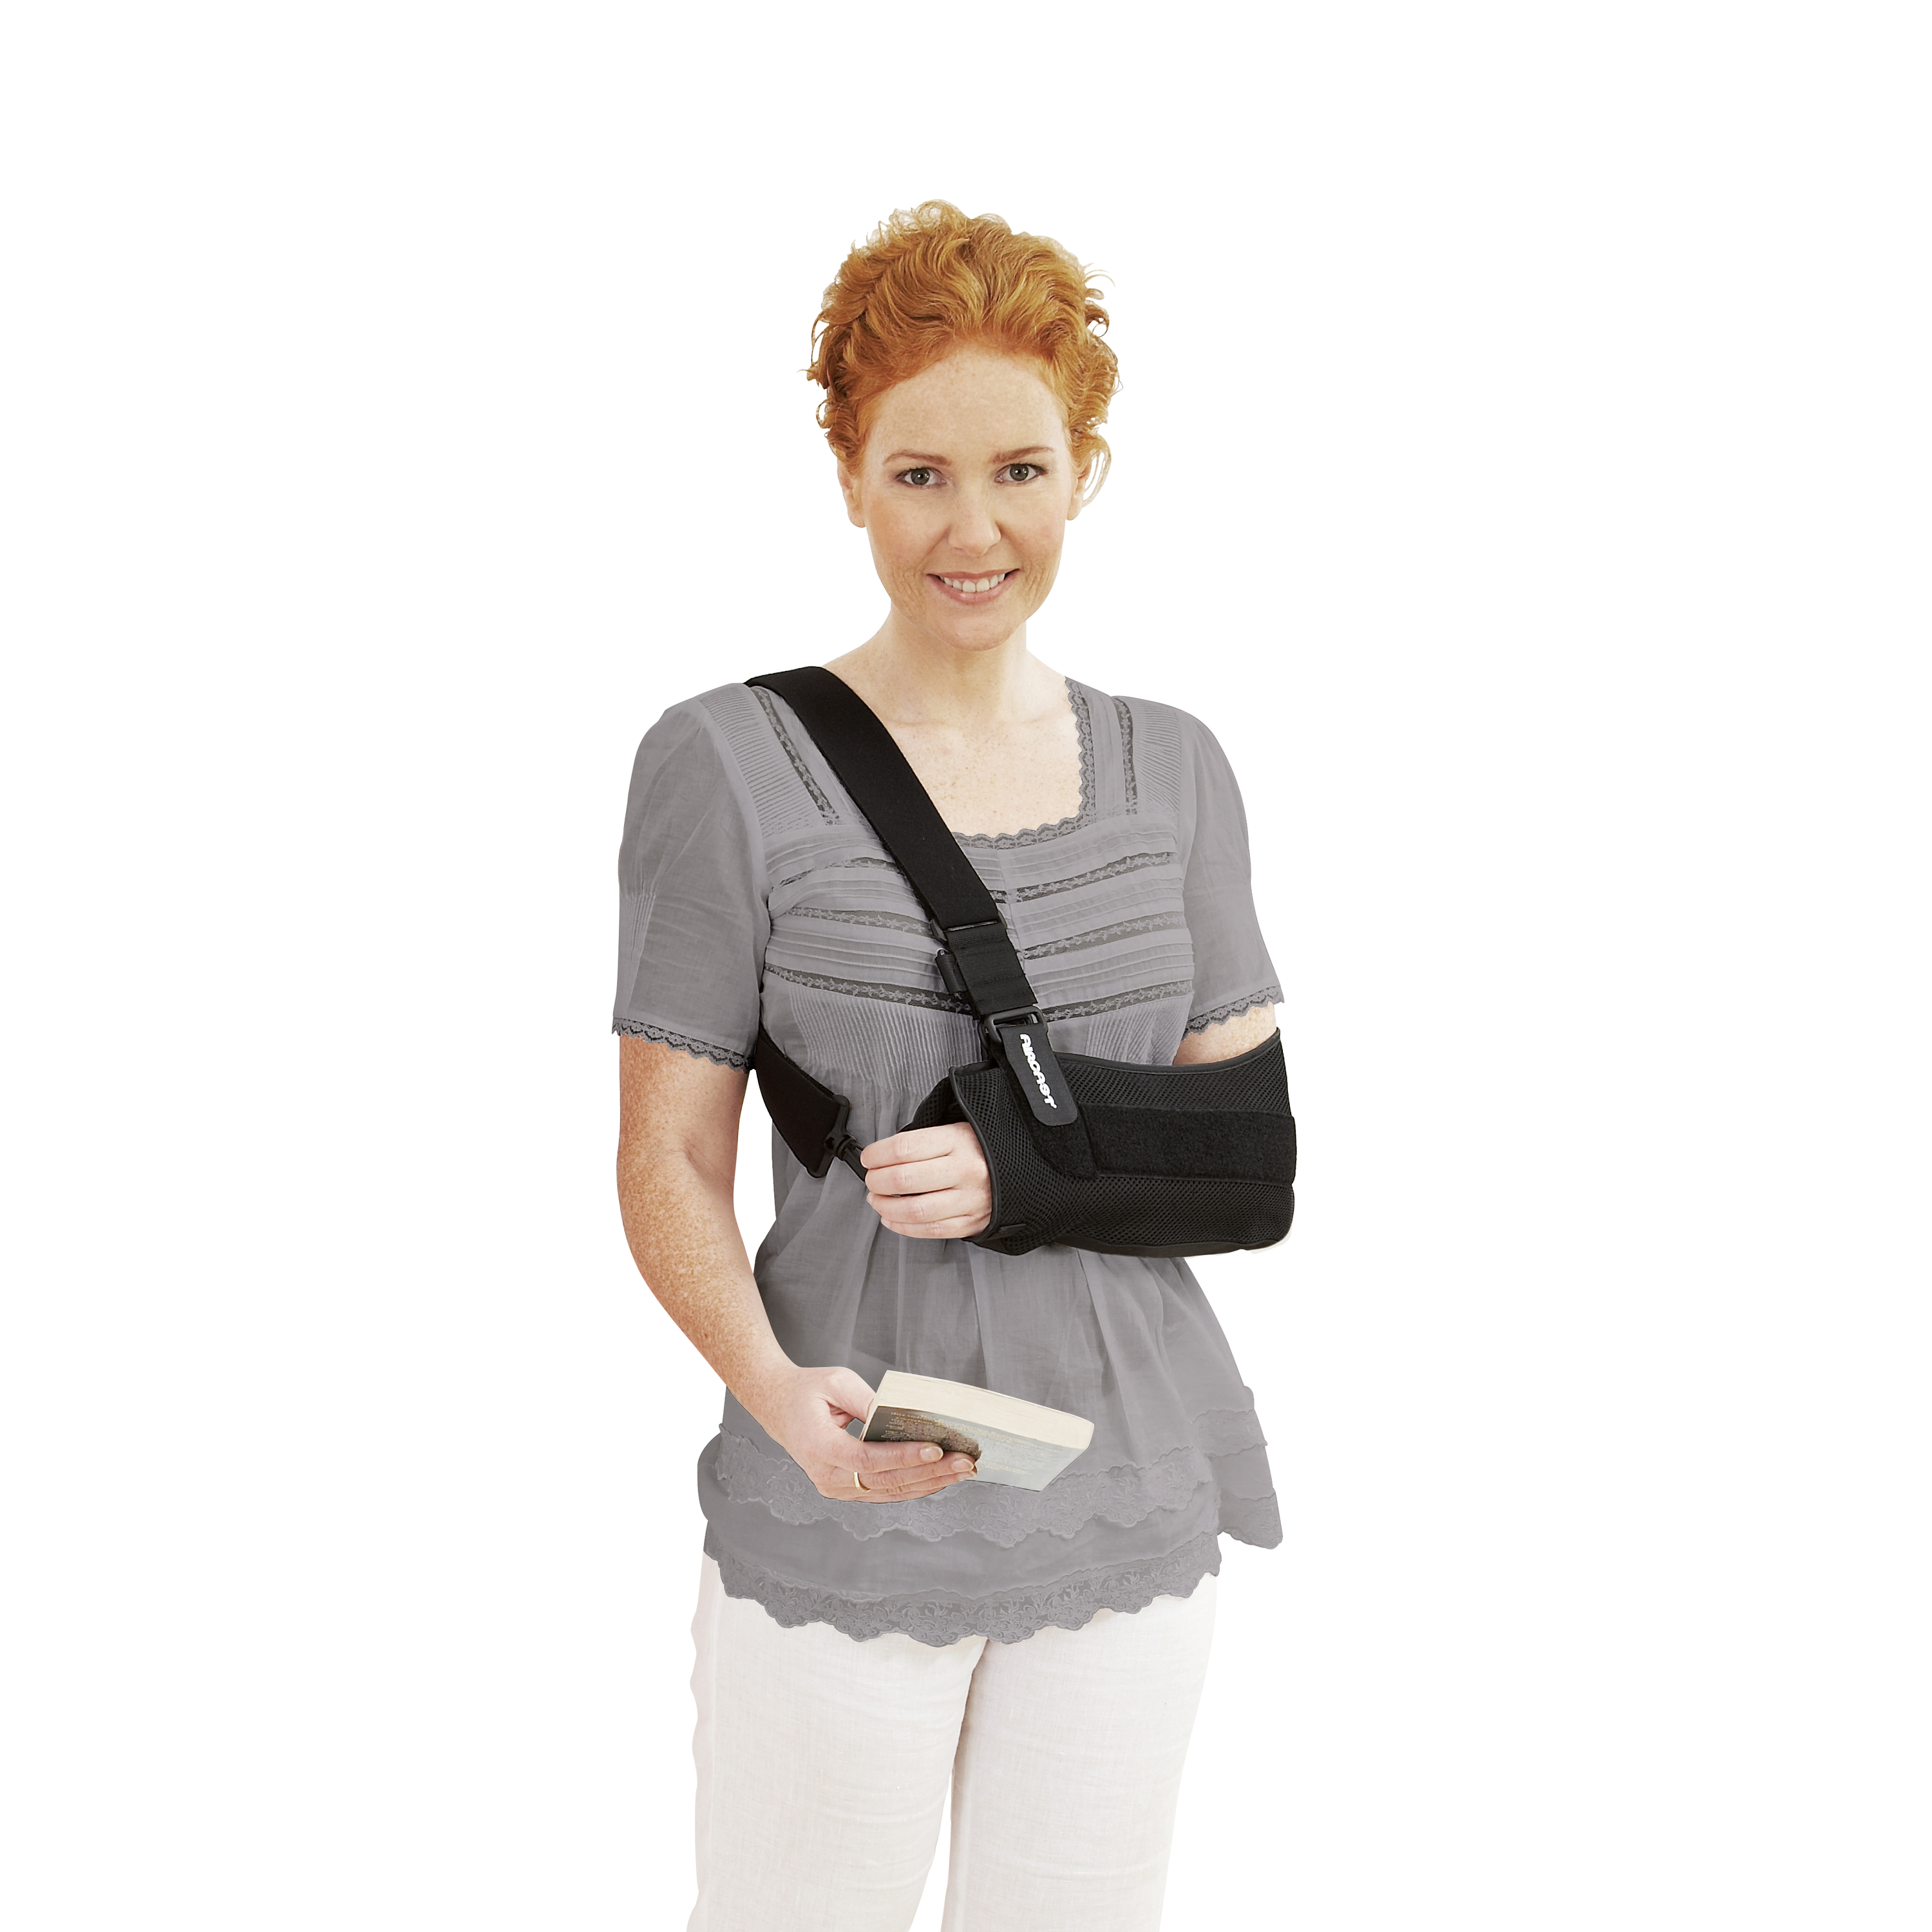 Produktbild AIRCAST® Arm Immobilizer, Schultergelenkorthese zur Immobilisierung Frau mit grauem Oberteil und Buch